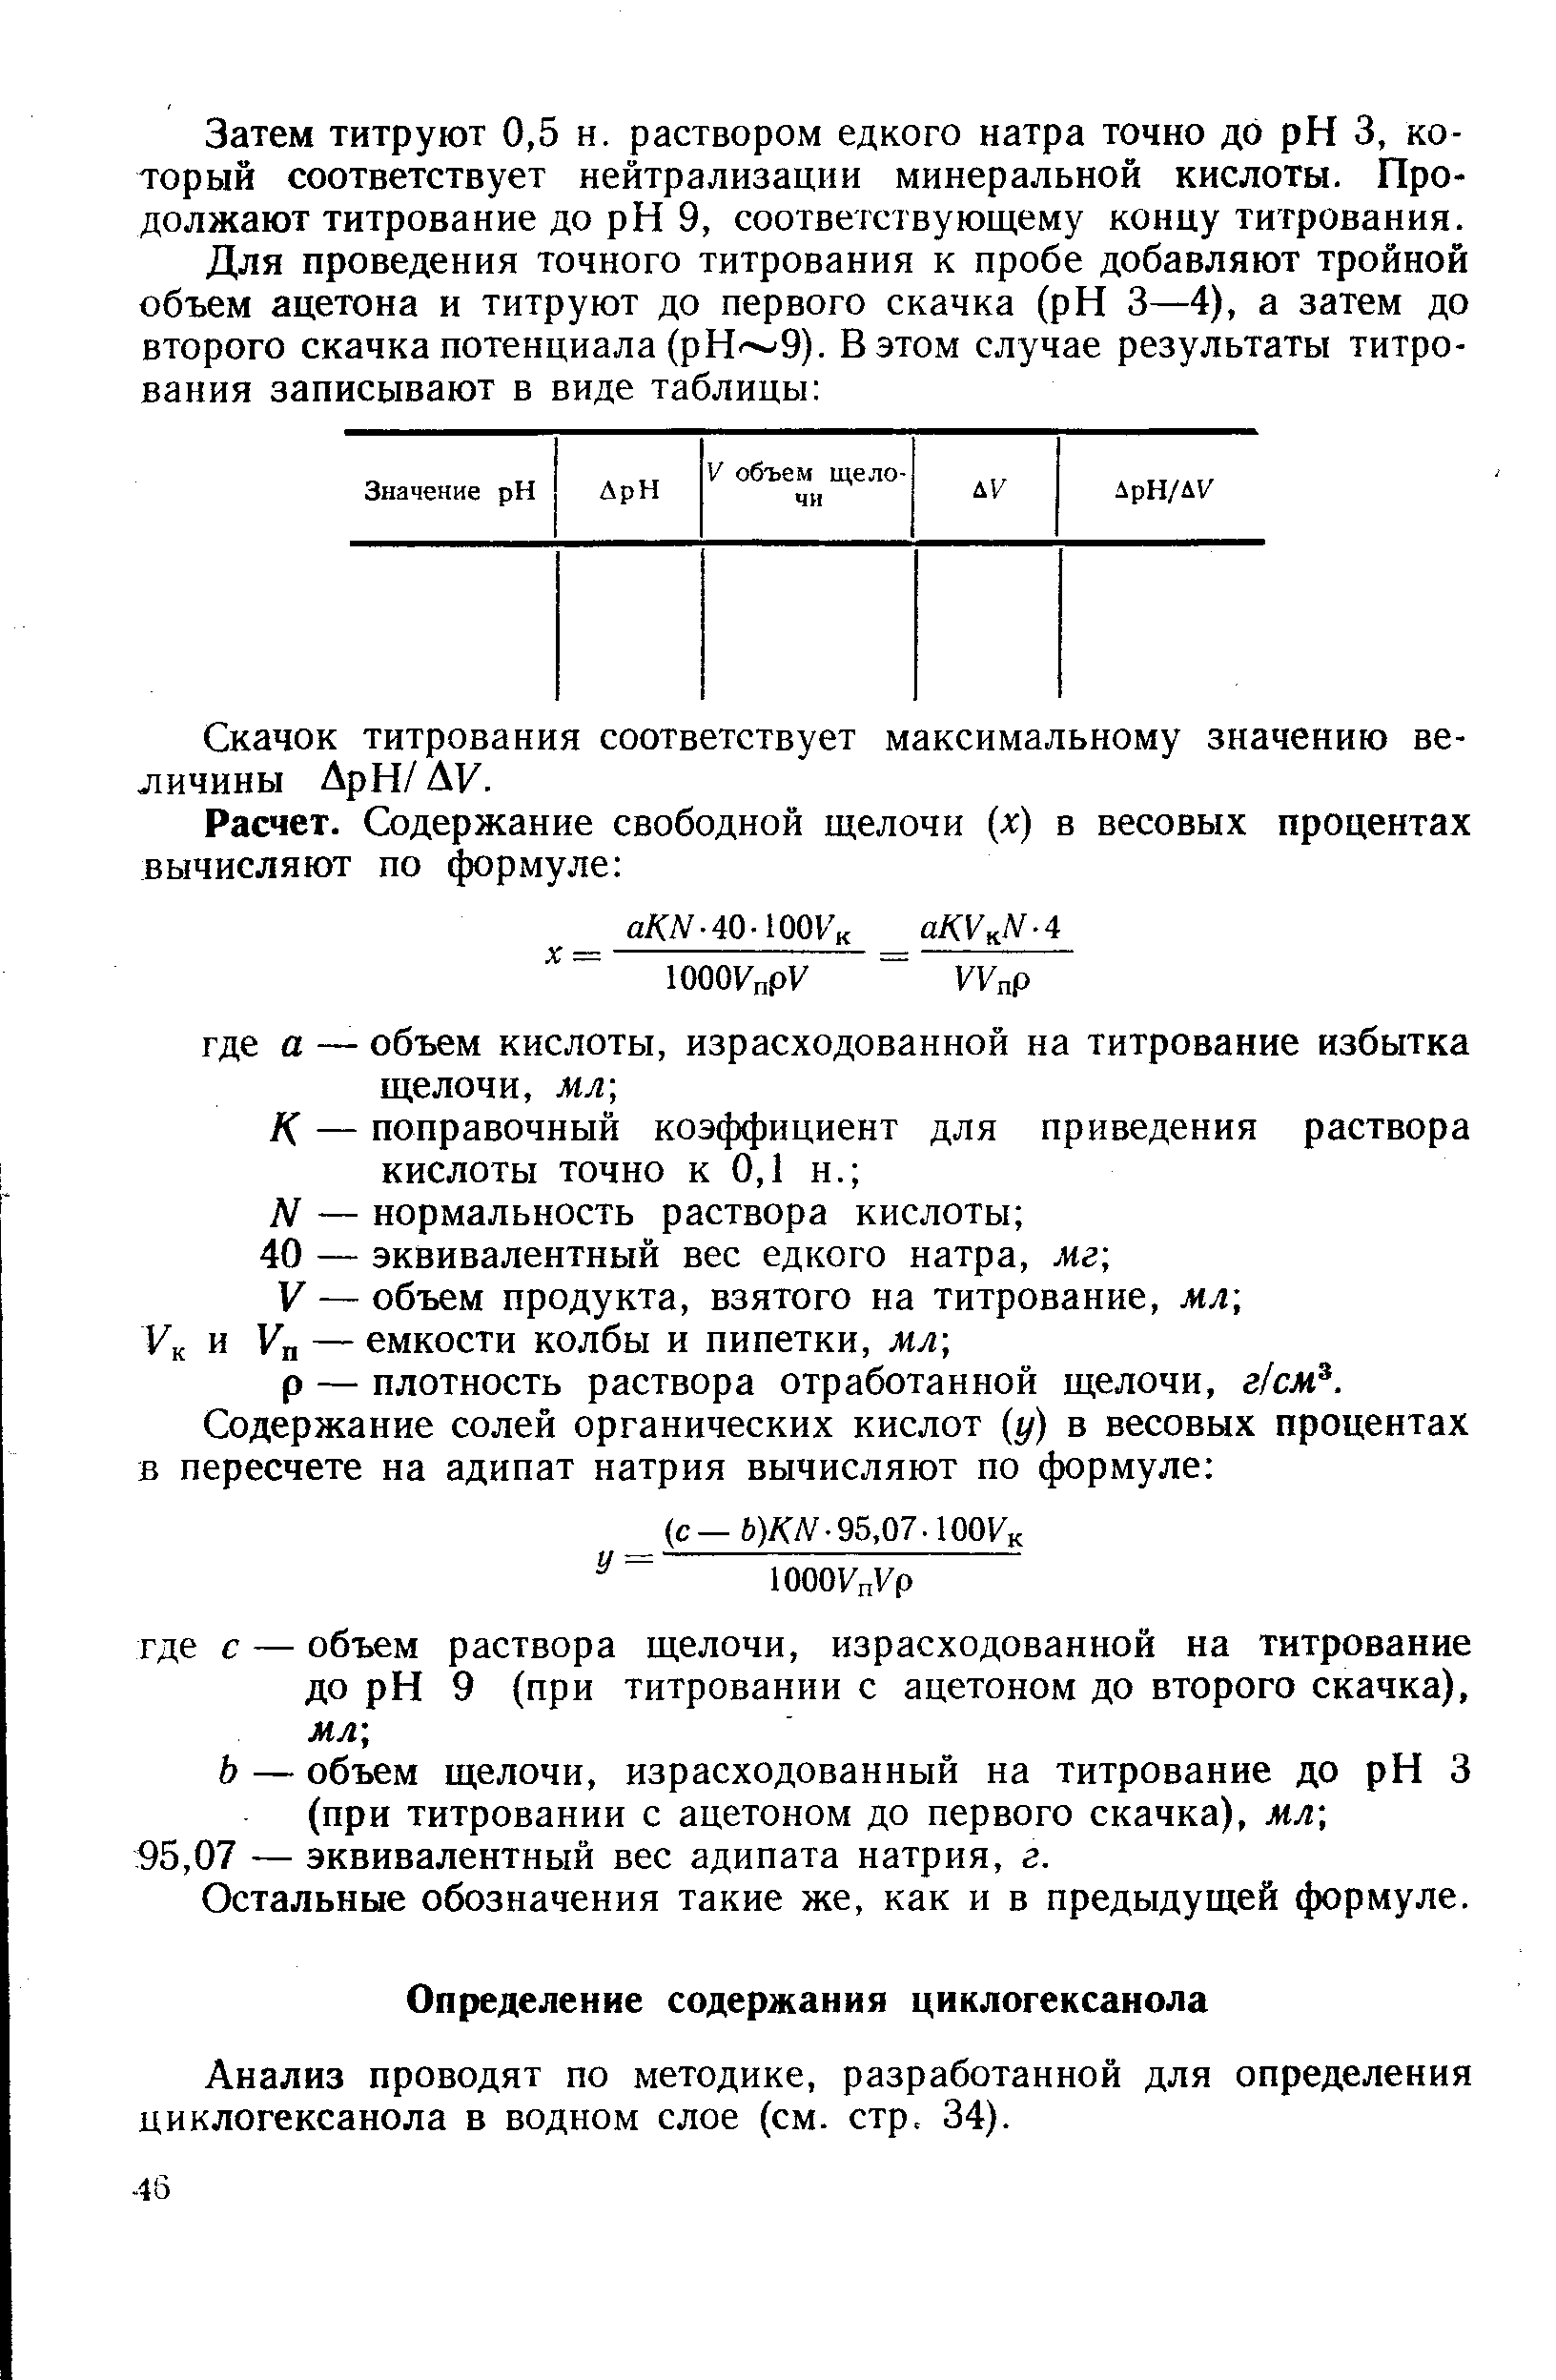 Анализ проводят по методике, разработанной для определения циклогексанола в водном слое (см. стр. 34).